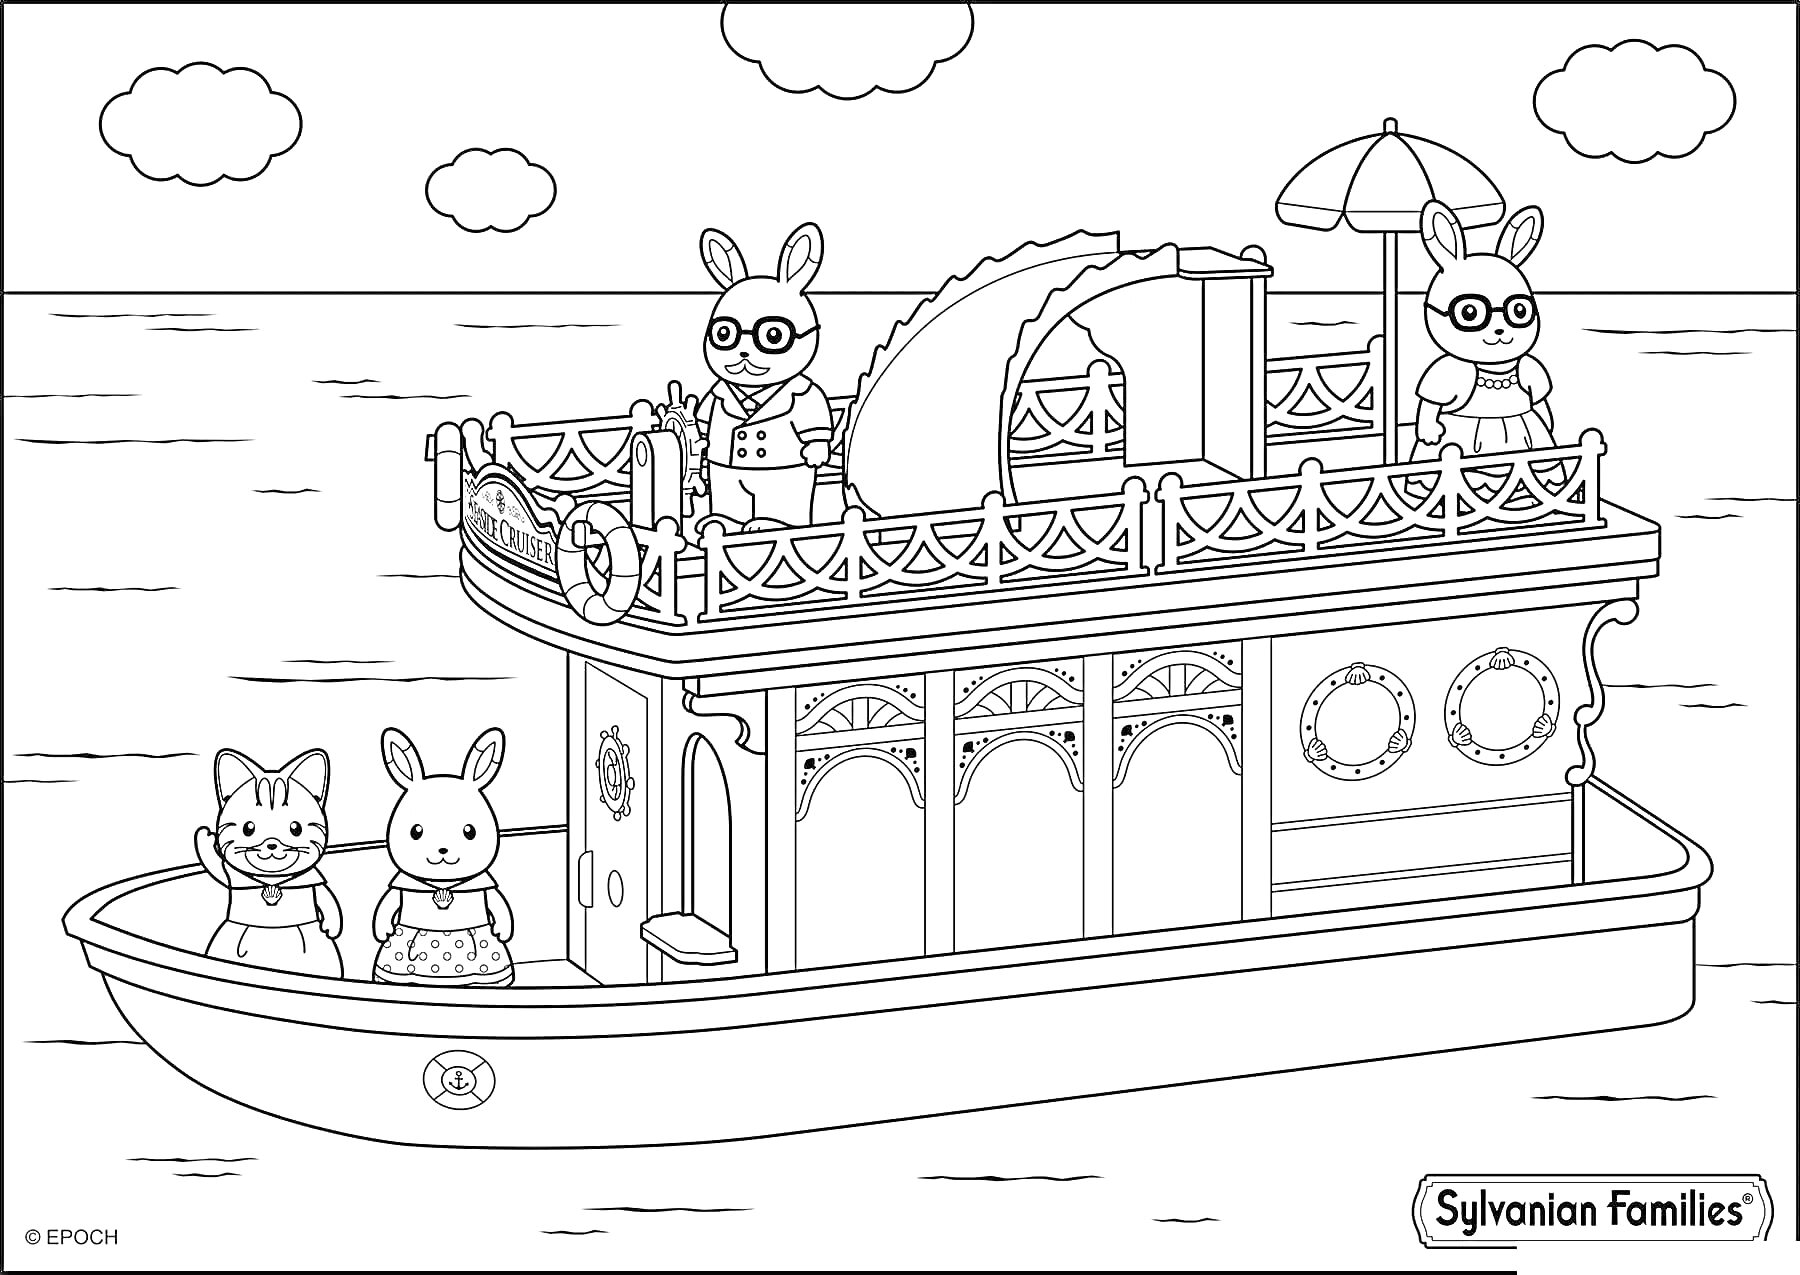 Раскраска Корабль с сильванианскими семьями, на палубе три кролика, два кролика на нижней палубе (один с бантиком), корабль с парусом, зонтиками и иллюминаторами, море и облака на заднем плане